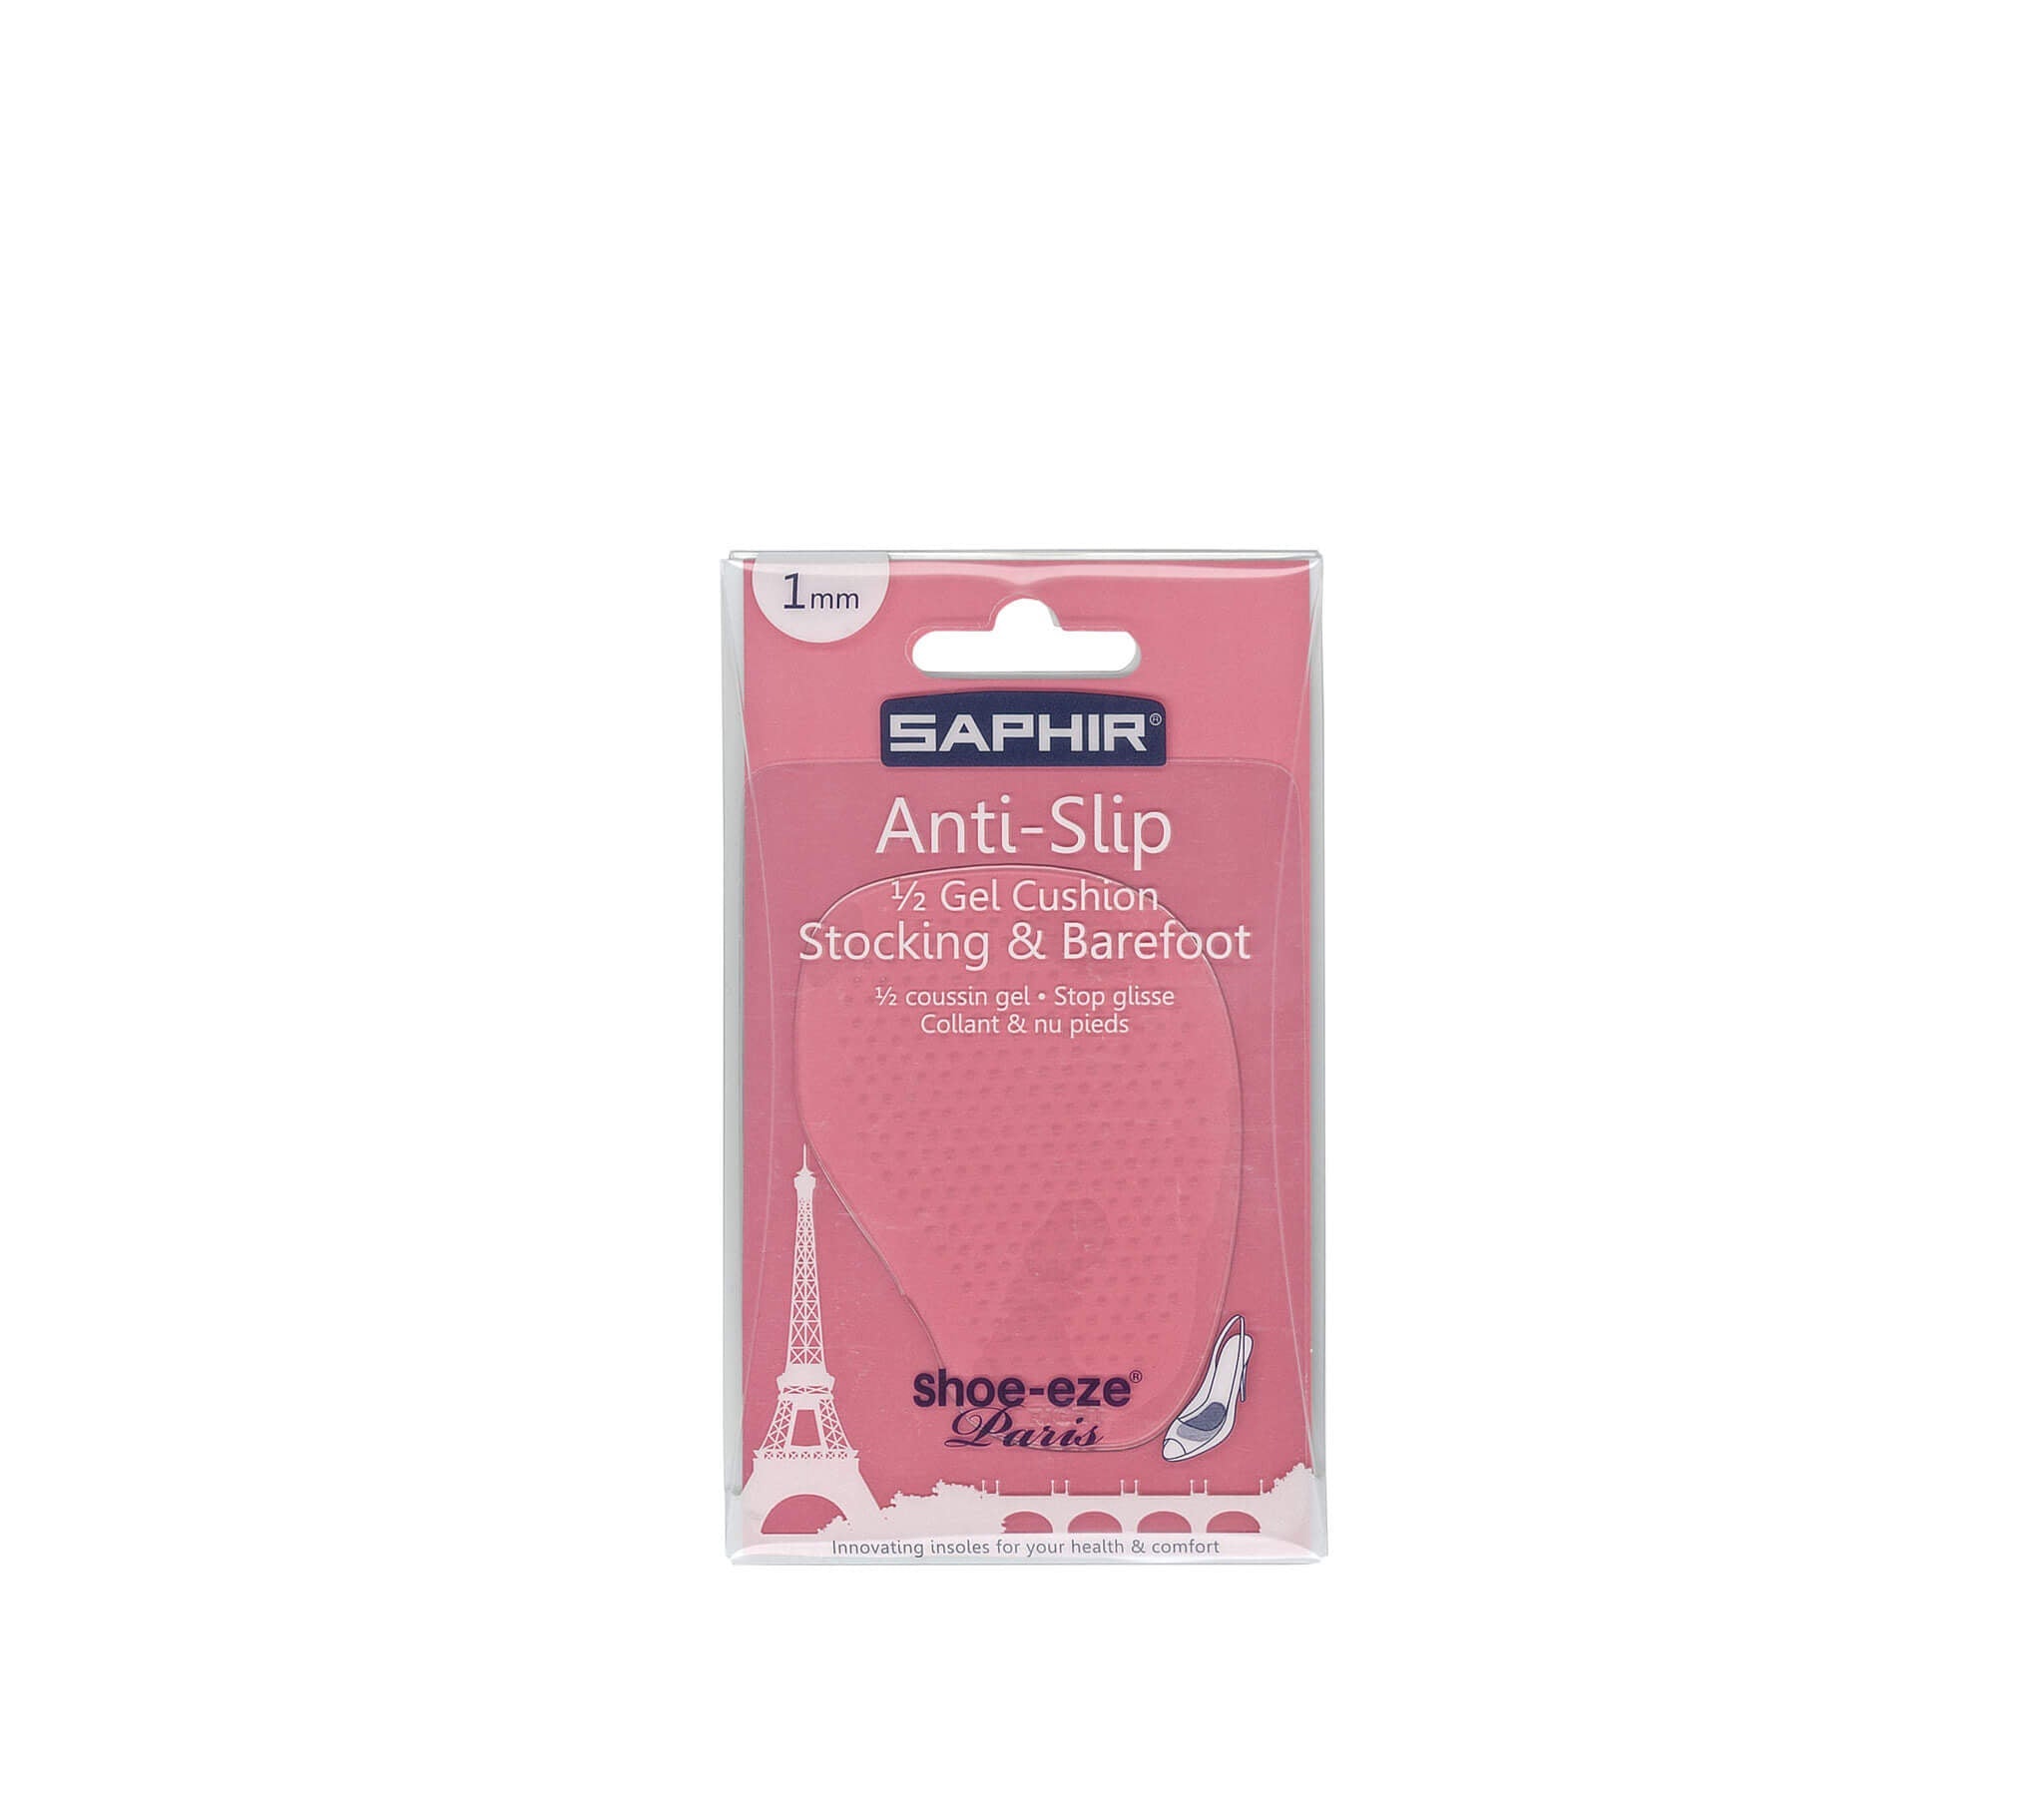 Saphir Beaute du Cuir - Anti Slip Gel Cushion 1mm